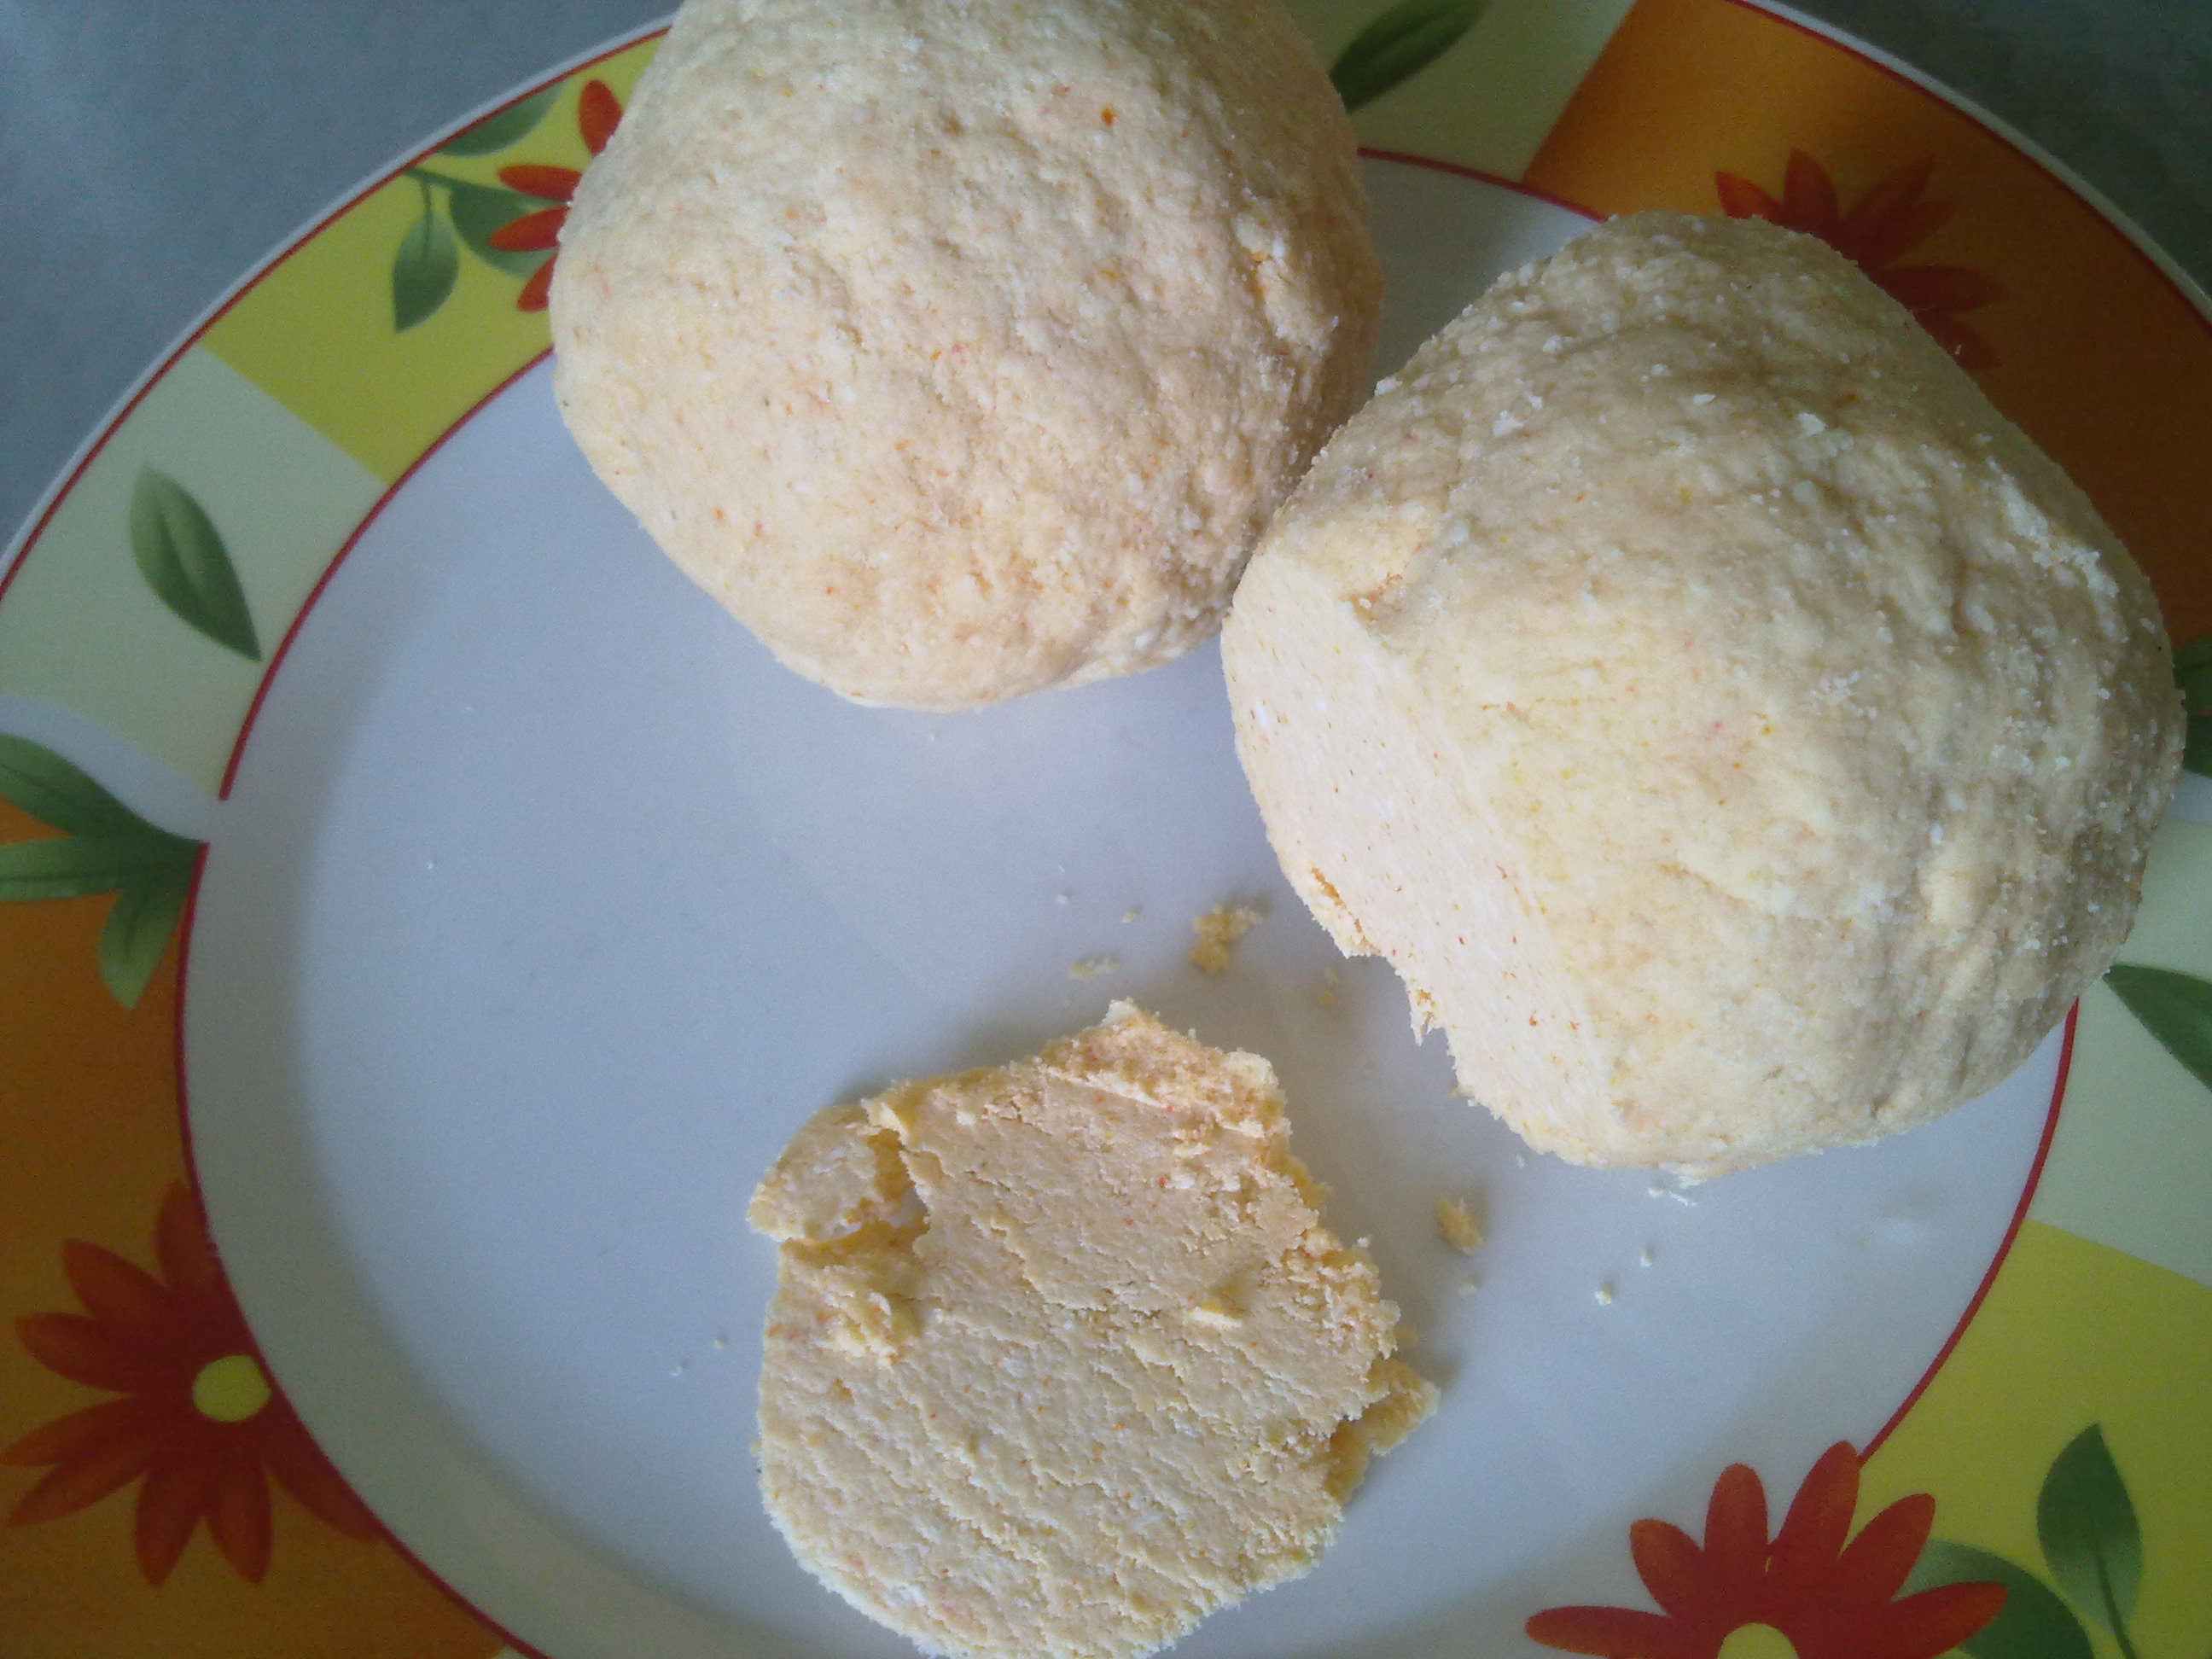 שנקליש - גבינת קורד ערבית